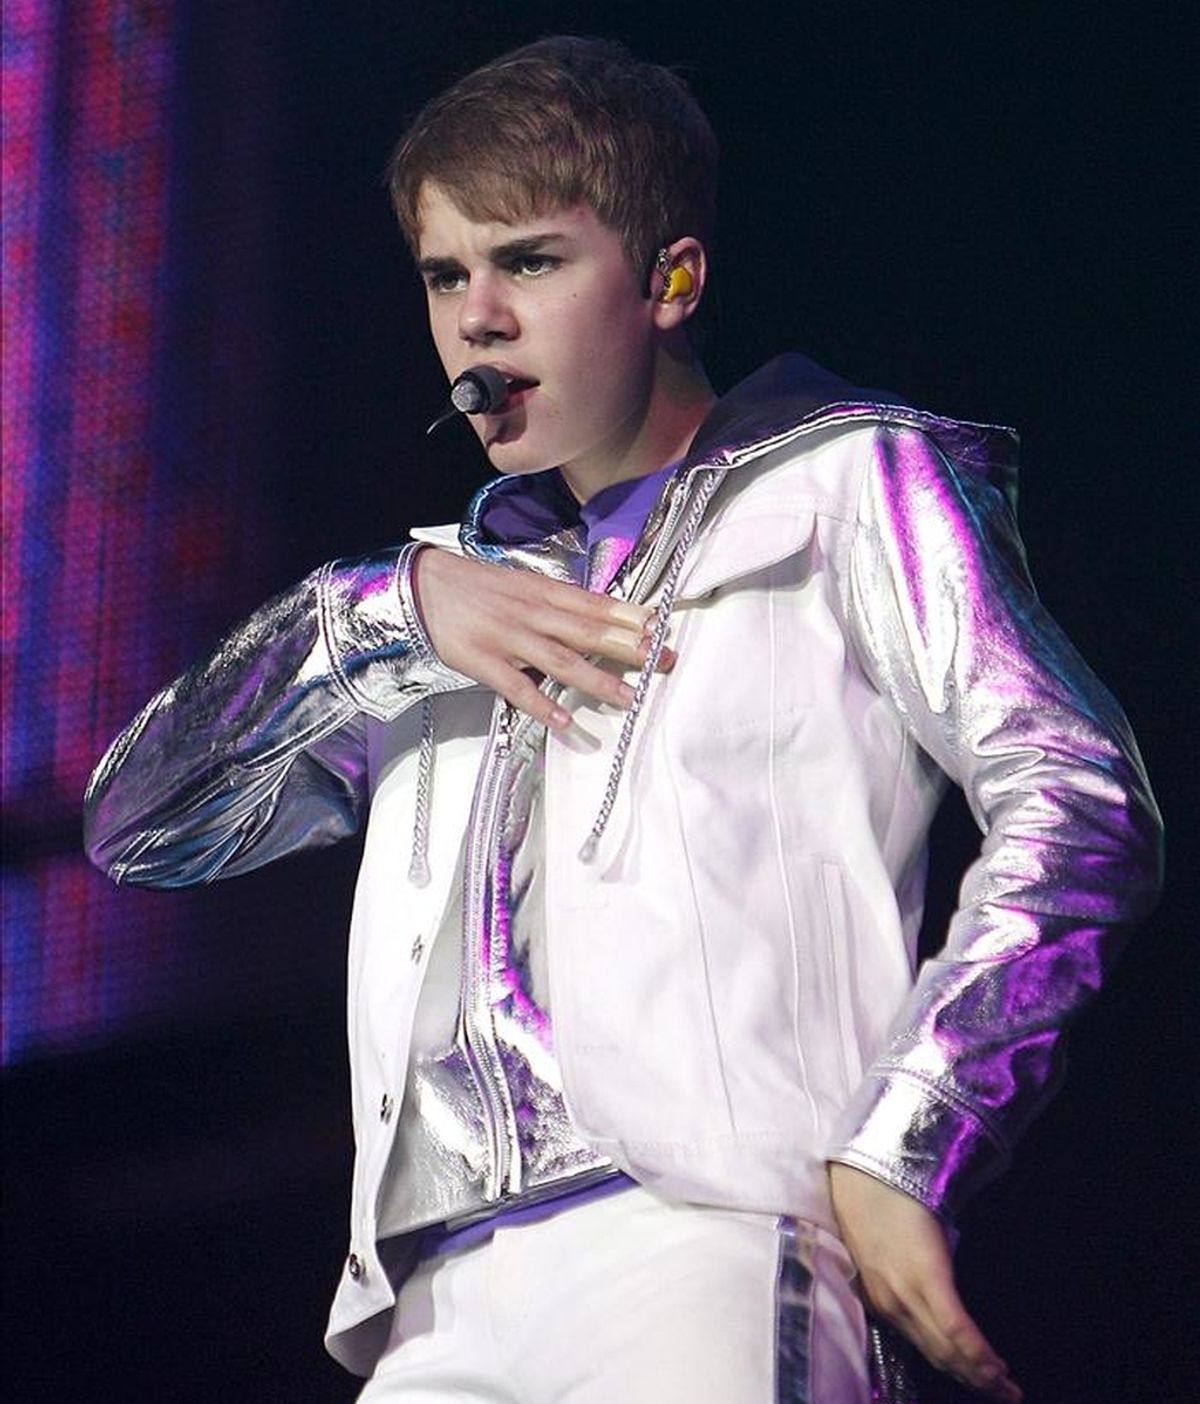 El ídolo juvenil Justin Bieber durante el concierto que ha ofrecido dentro de la gira "My World Tour", en el Palacio de los Deportes de Madrid. EFE